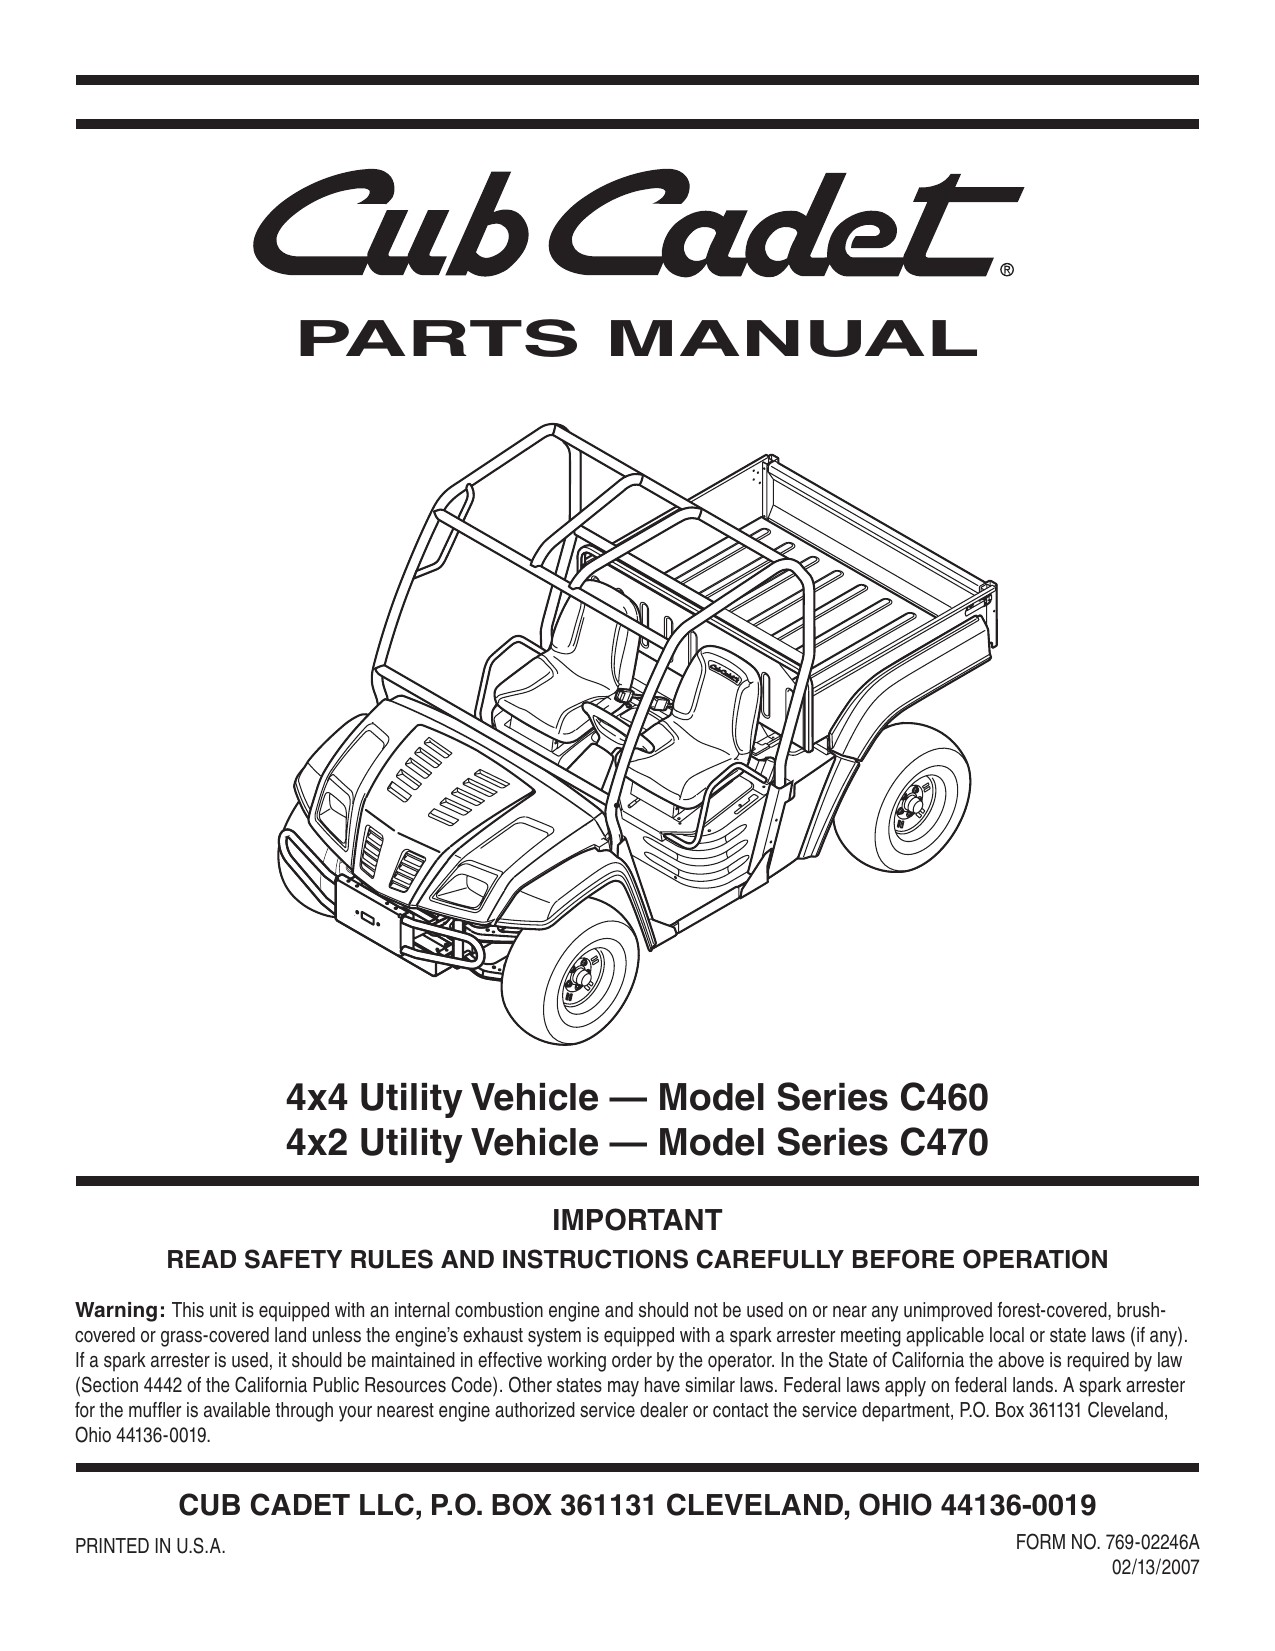 Cub Cadet Rzt 50 Parts Diagram Parts Manual Cub Cadet Rzt S Of Cub Cadet Rzt 50 Parts Diagram